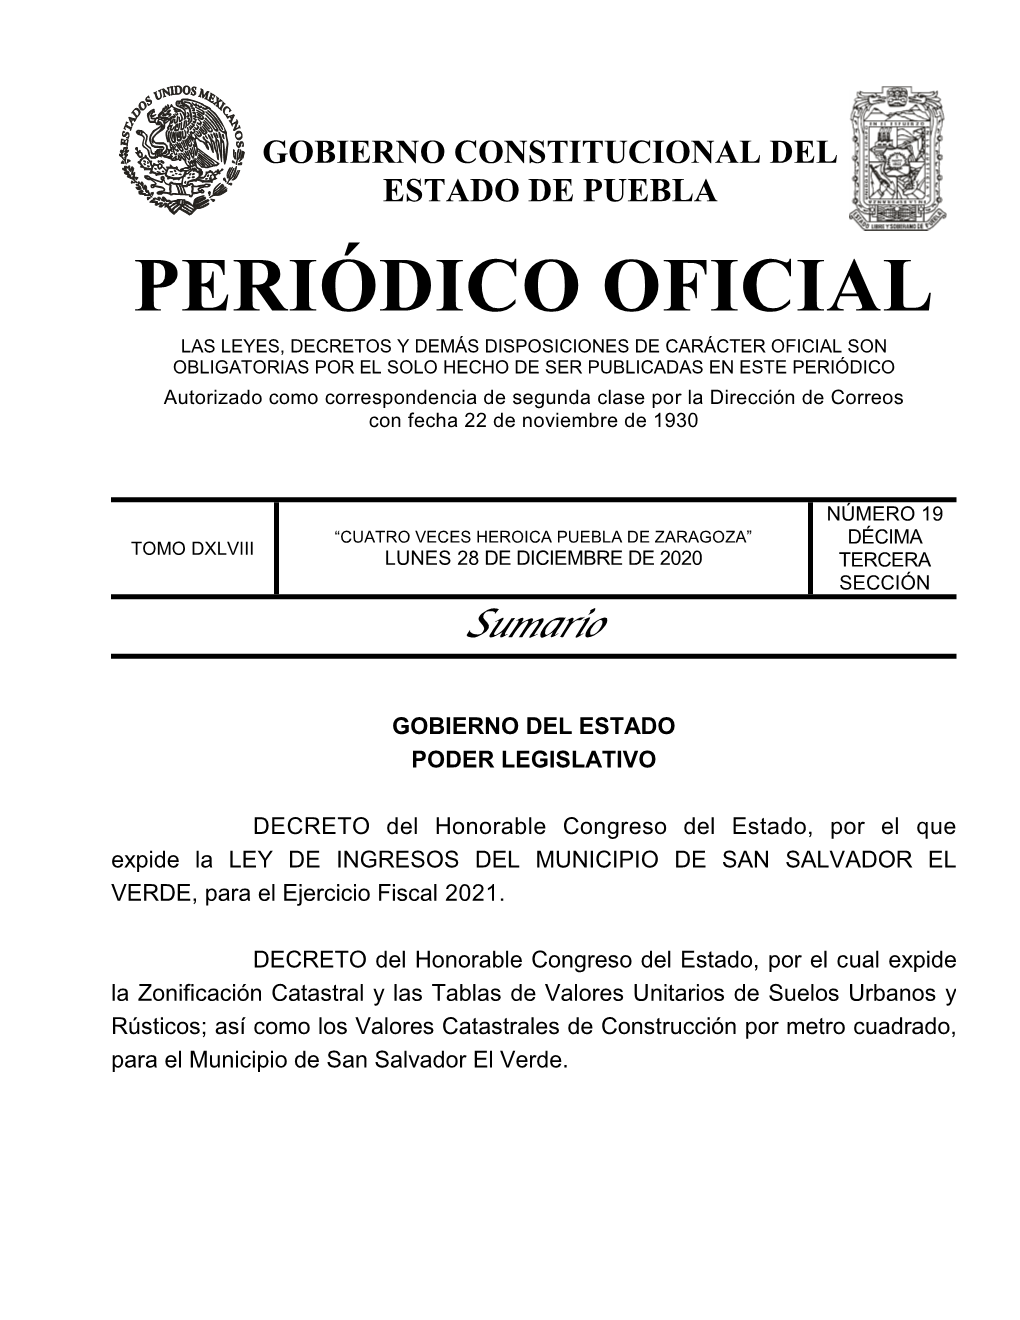 LEY DE INGRESOS DEL MUNICIPIO DE SAN SALVADOR EL VERDE, Para El Ejercicio Fiscal 2021